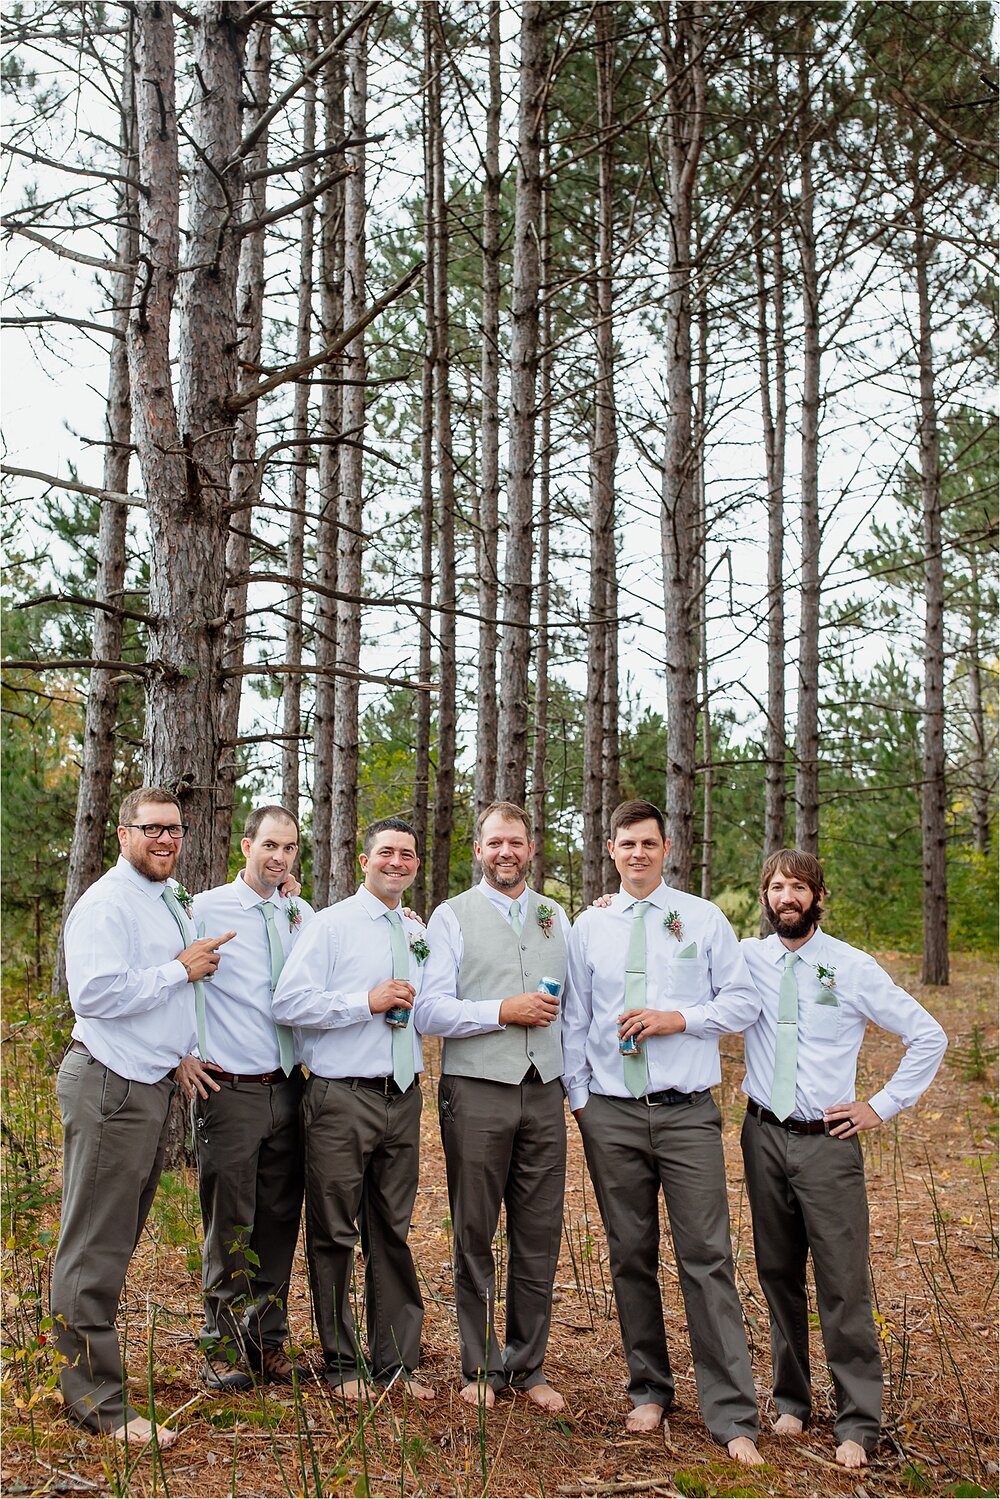 groomsmen-woods-beer.jpg